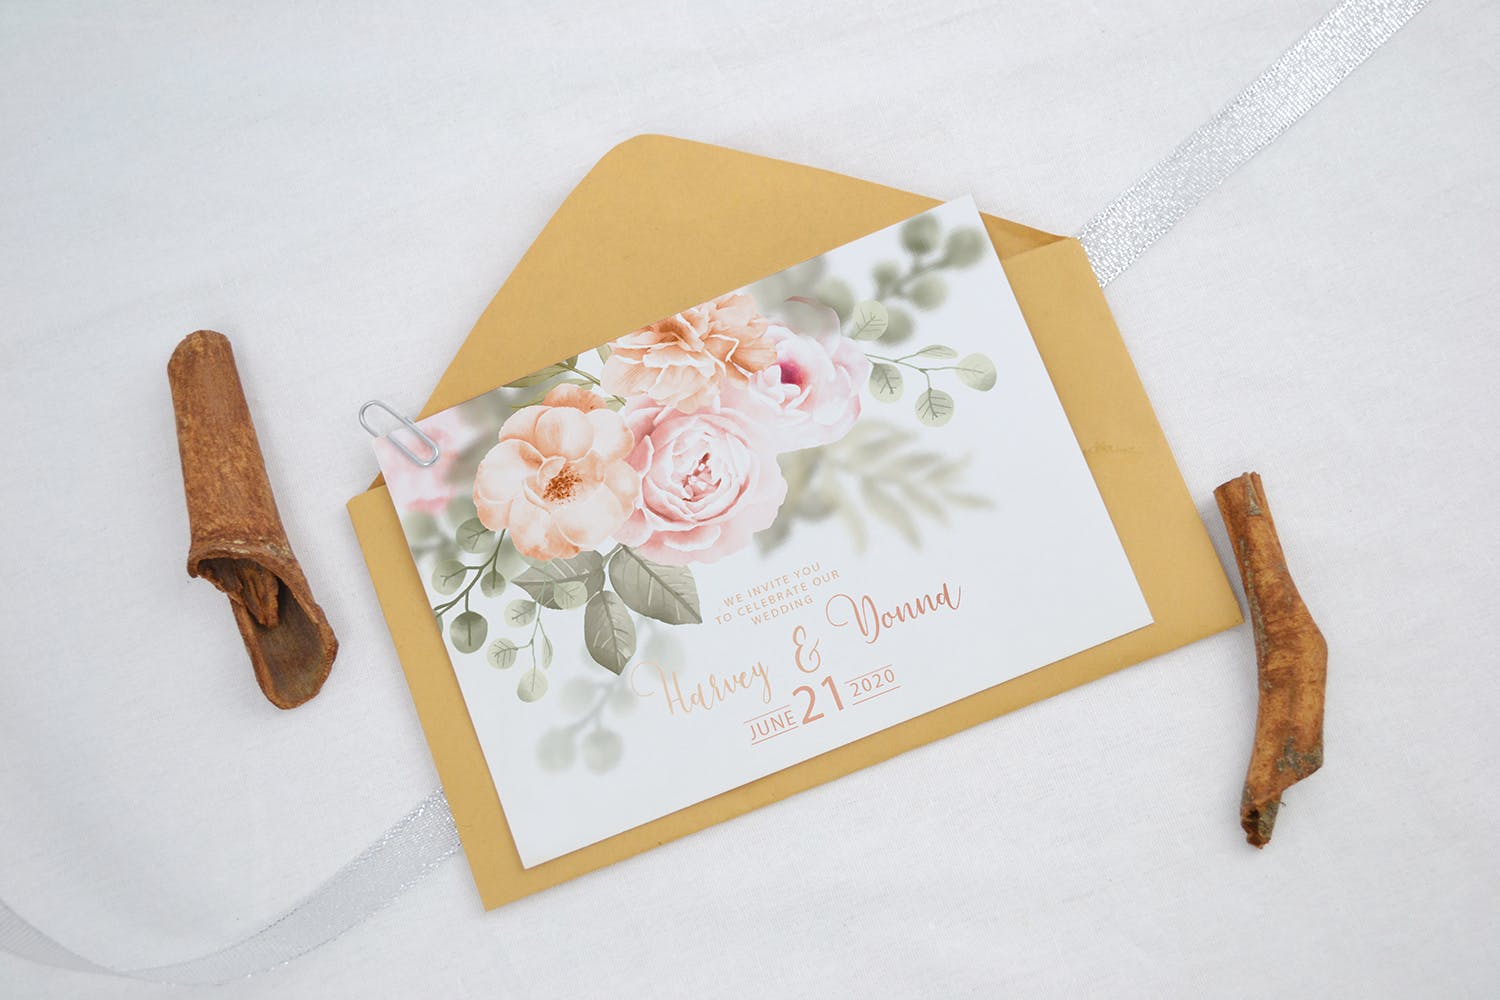 婚礼邀请函设计效果图样机蚂蚁素材精选模板v2 Realistic Wedding Invitation Card Mockup V2插图(3)